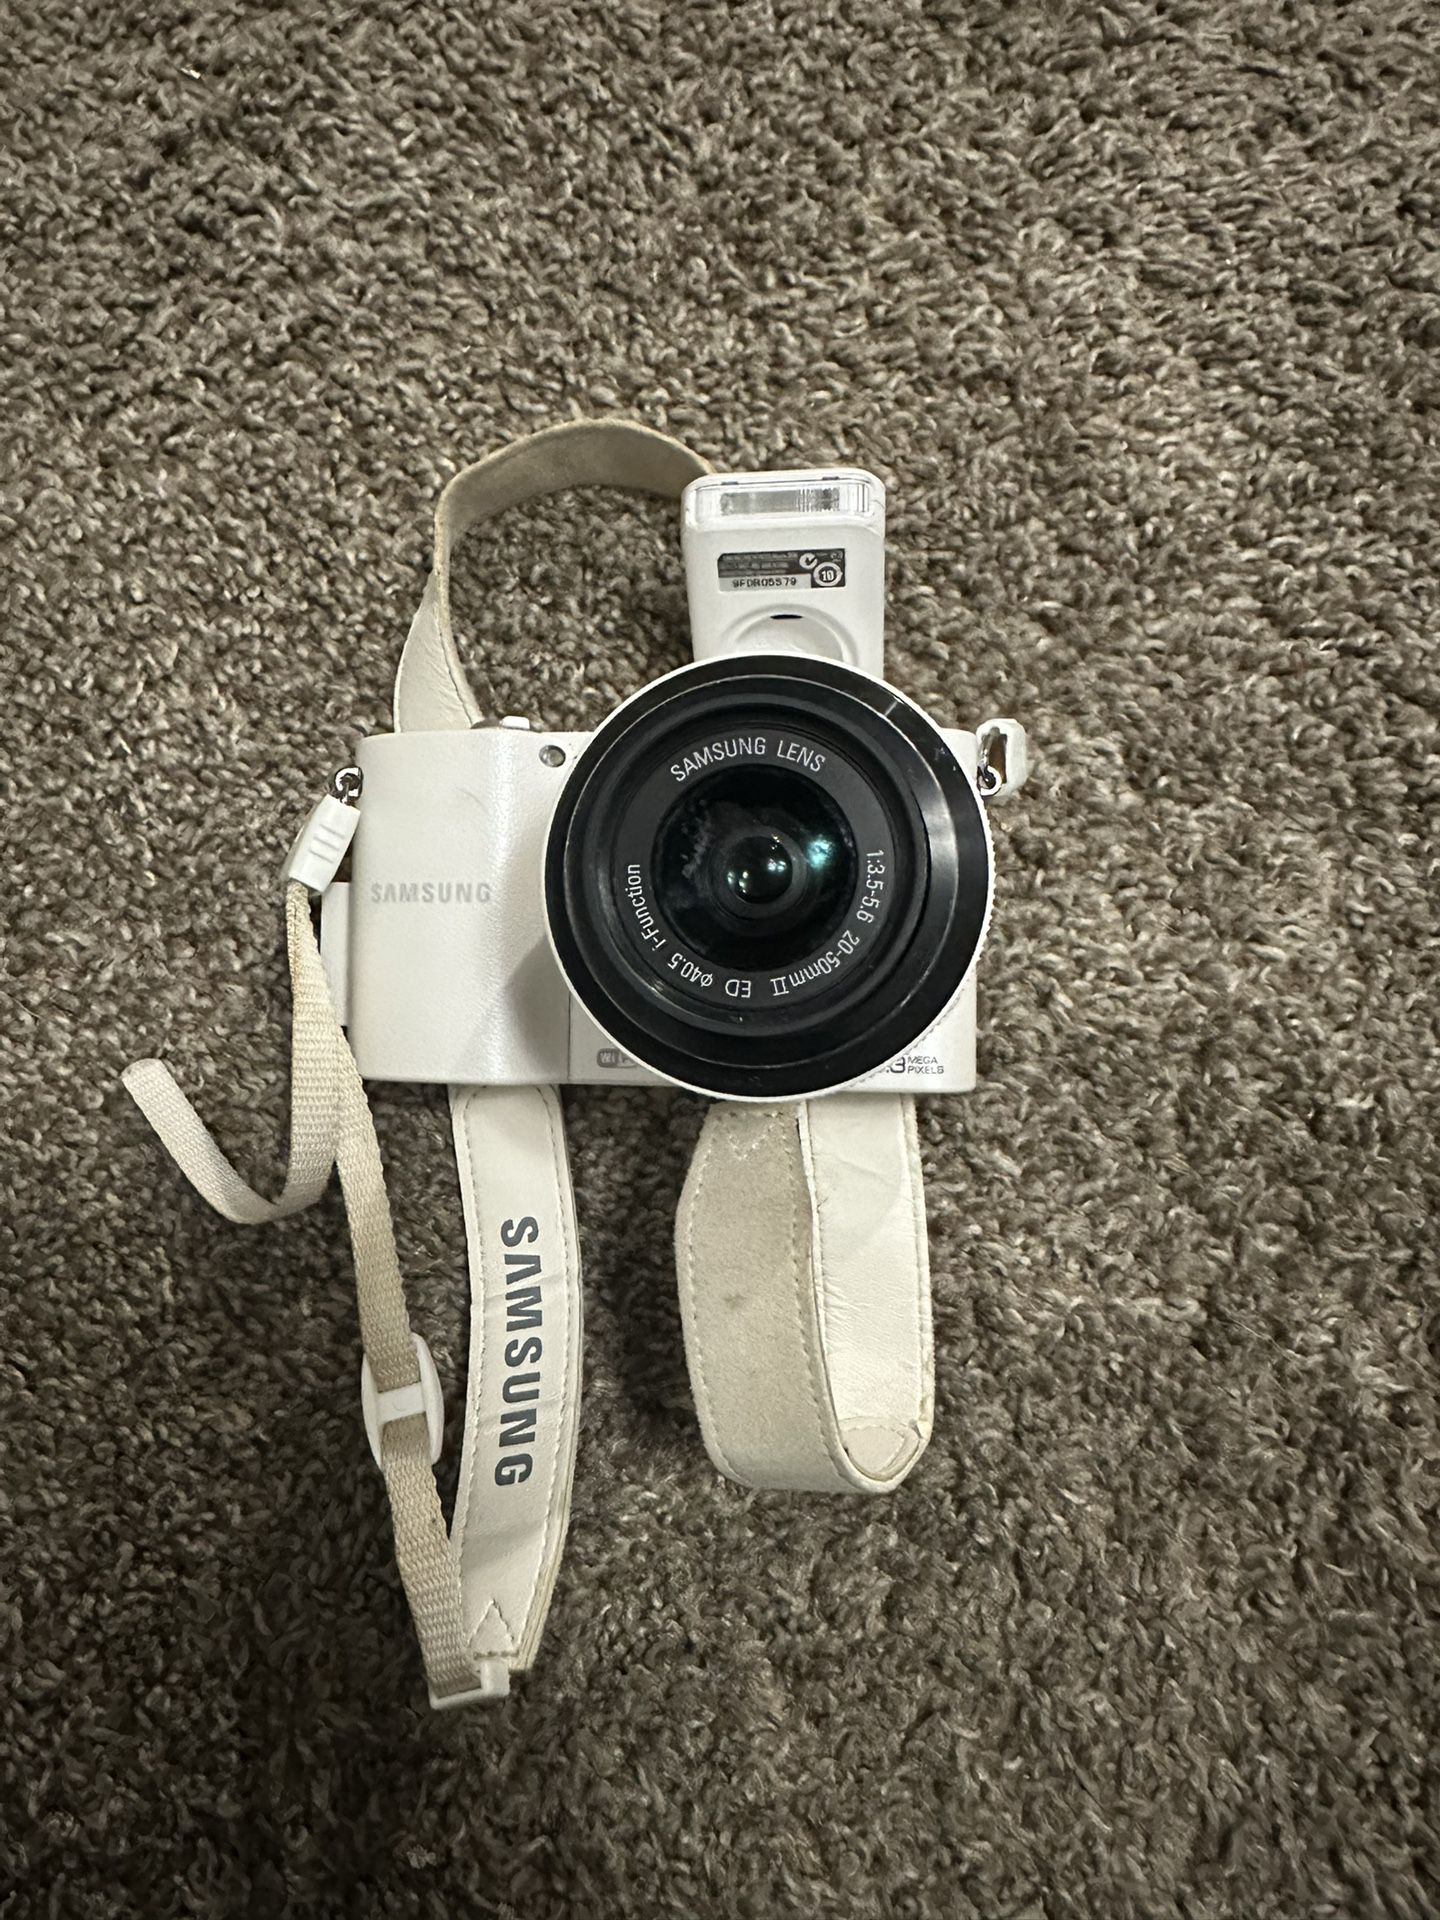 Samsung Camera 20.3mp